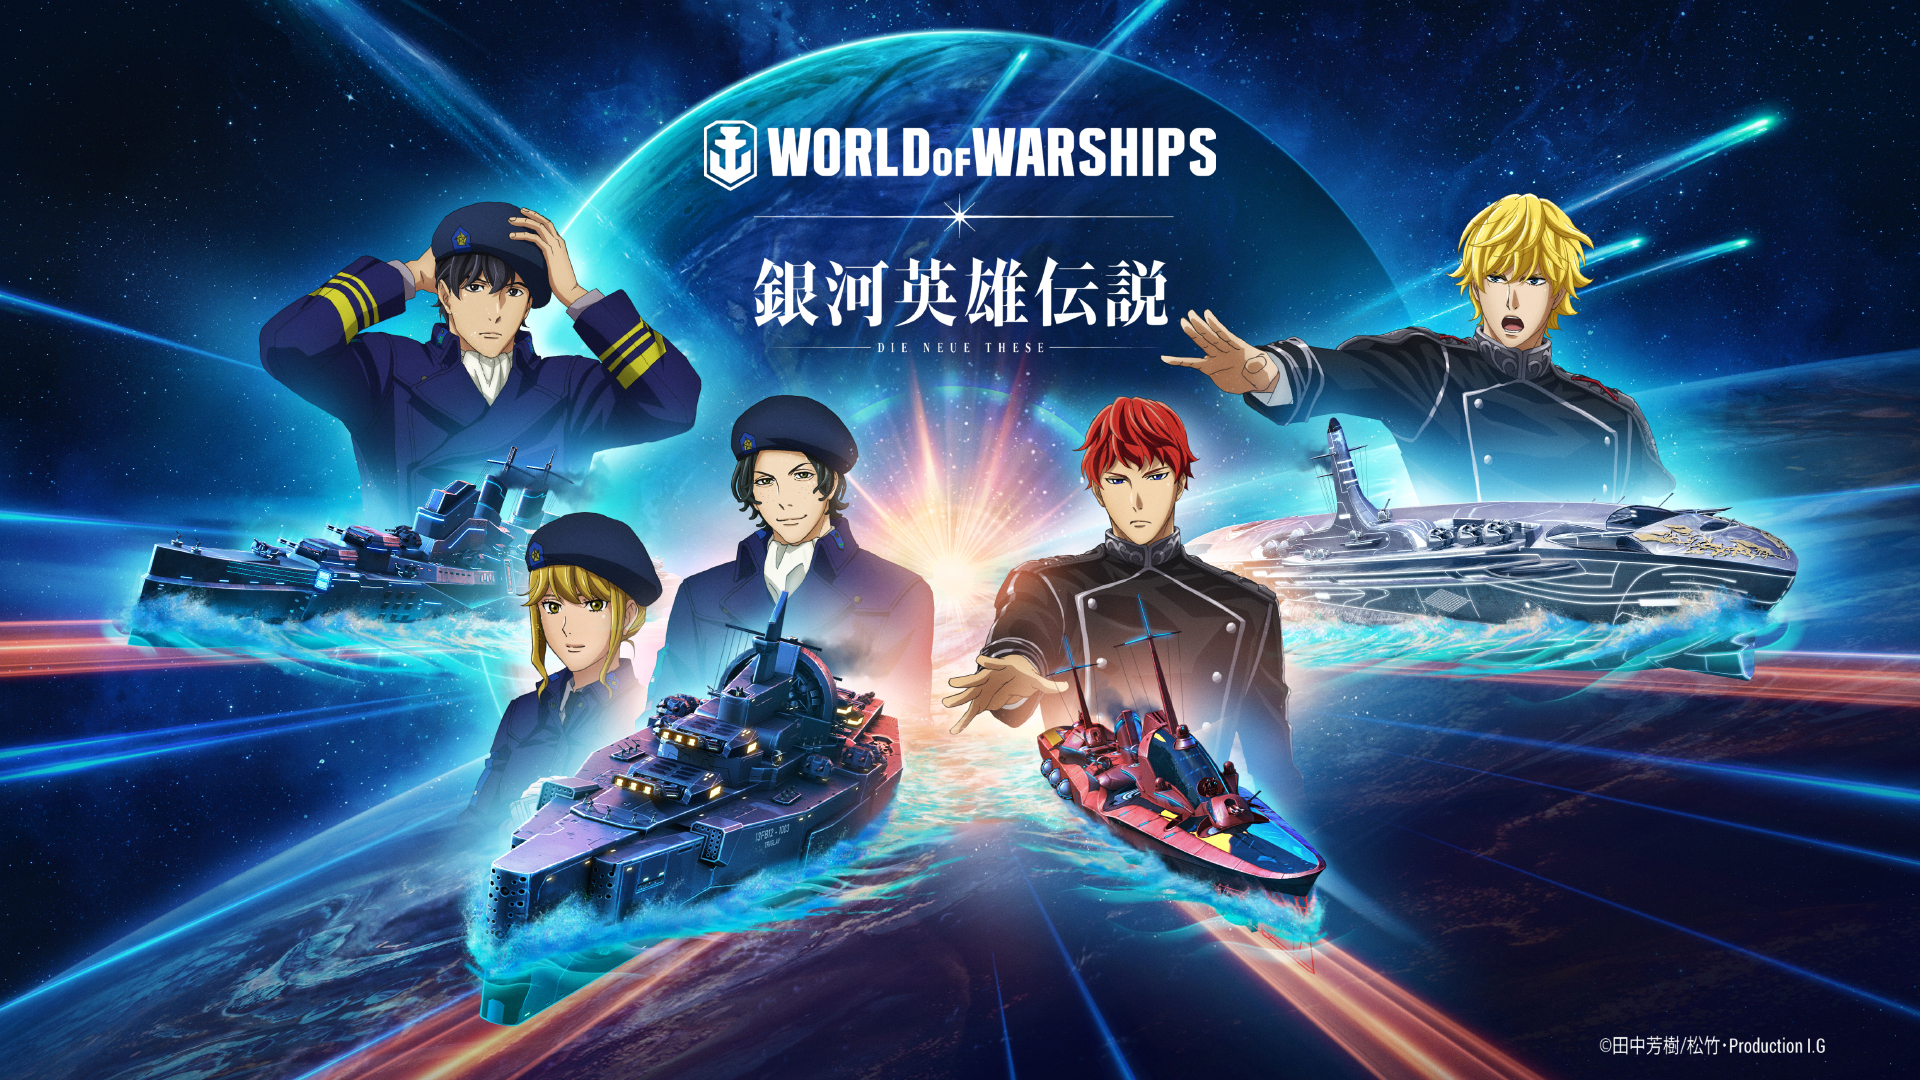 銀河英雄伝説 Die Neue These』x『World of Warships』コラボ開始